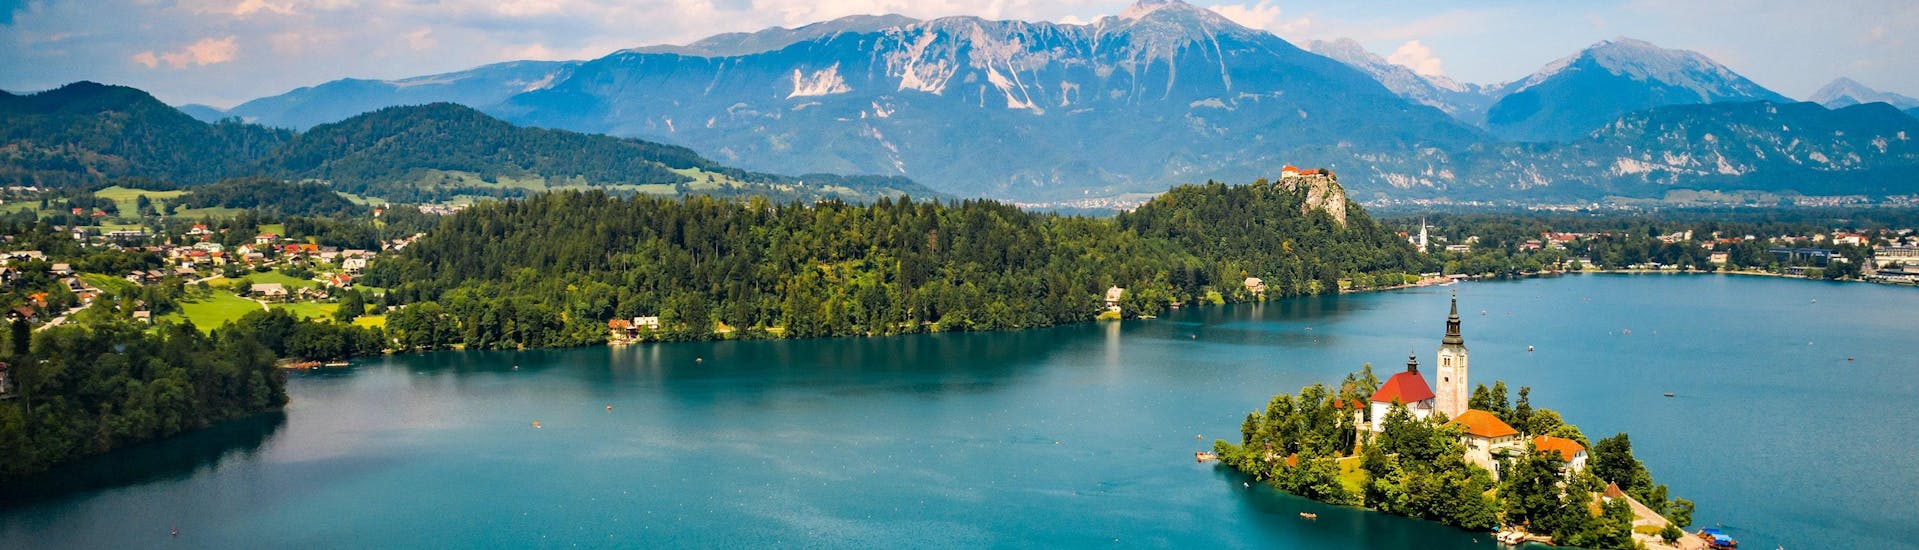 Uitzicht over het prachtige meer van Bled, een populaire bestemming voor paragliding. 